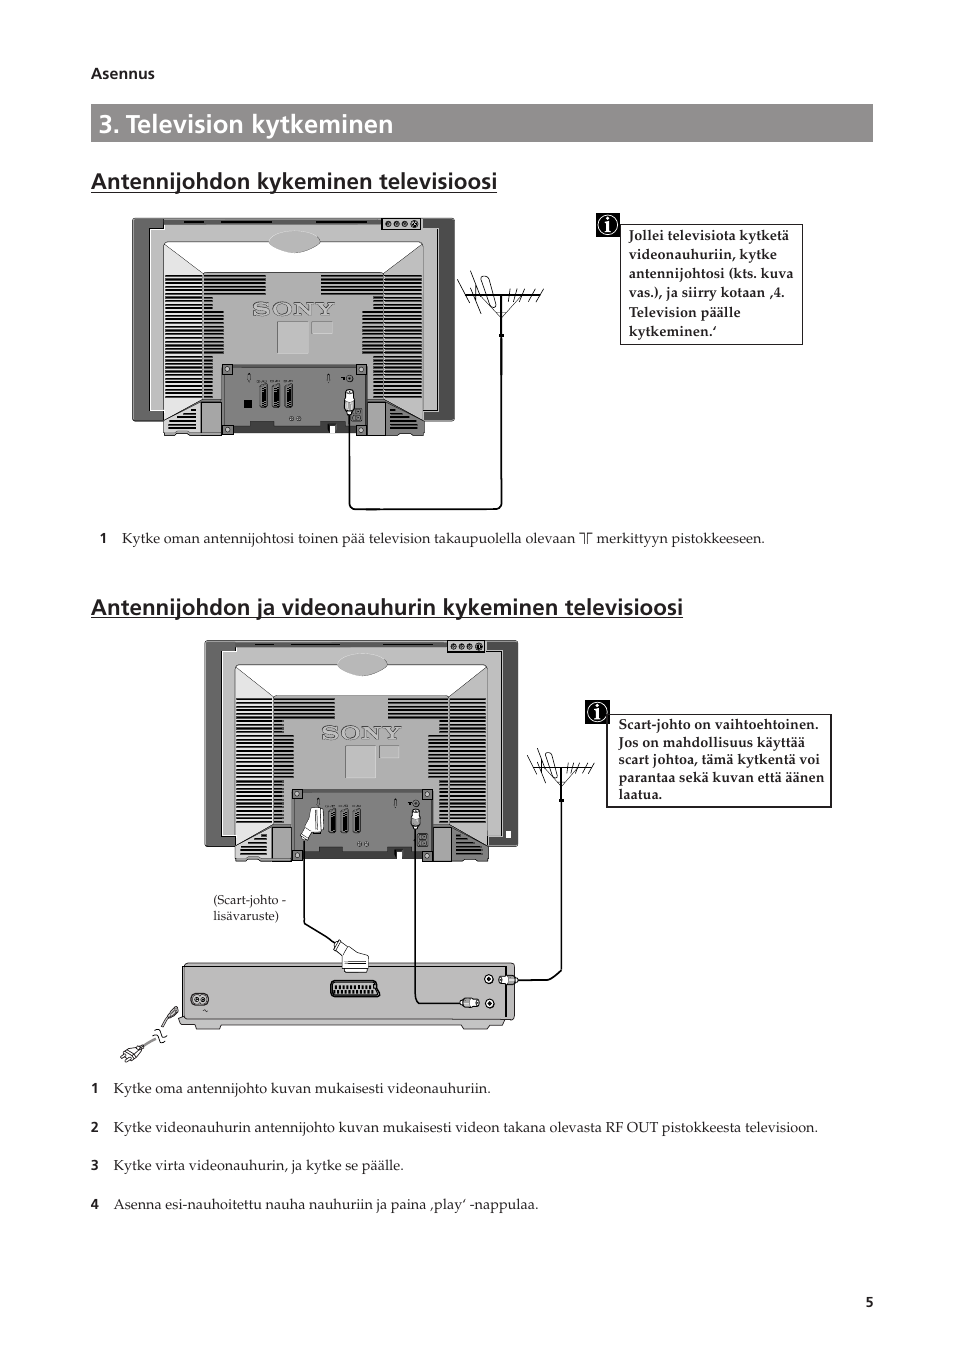 Television kytkeminen, Asennus, 3s 3 | Sony FD Trinitron KV-28FC60-Z Benutzerhandbuch | Seite 119 / 168